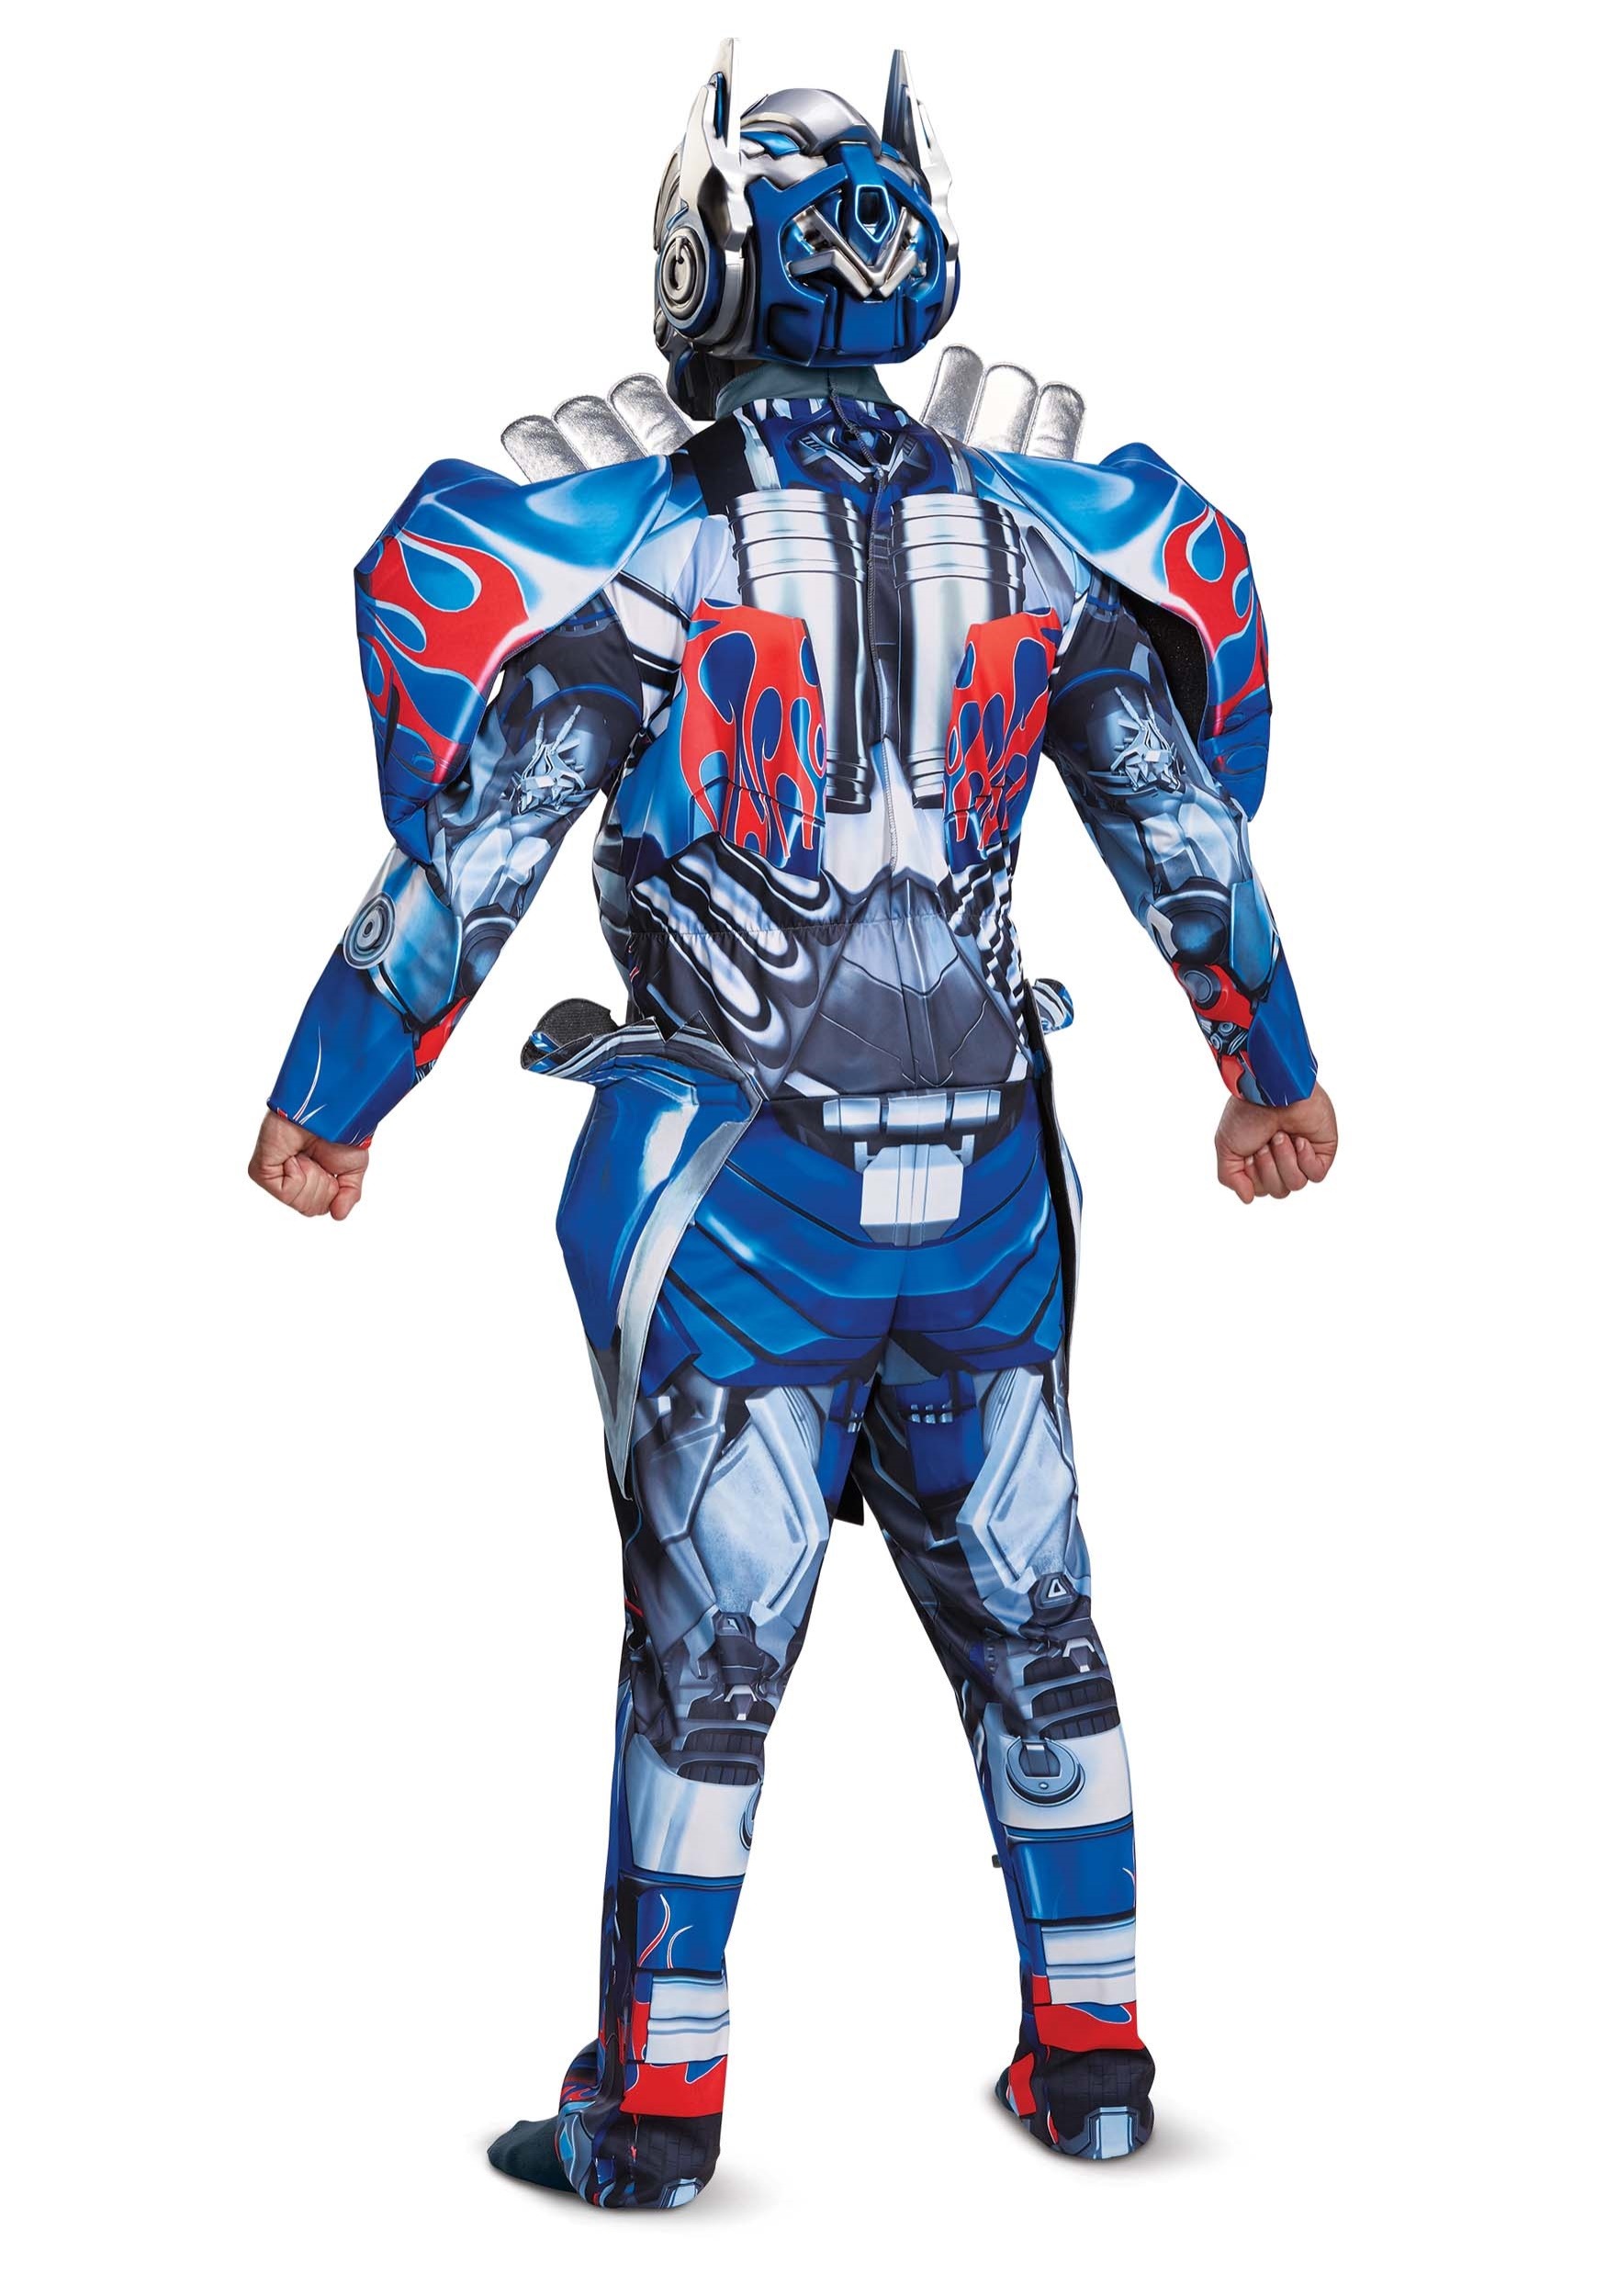 Transformers 5 Deluxe Optimus Prime Adult Costume